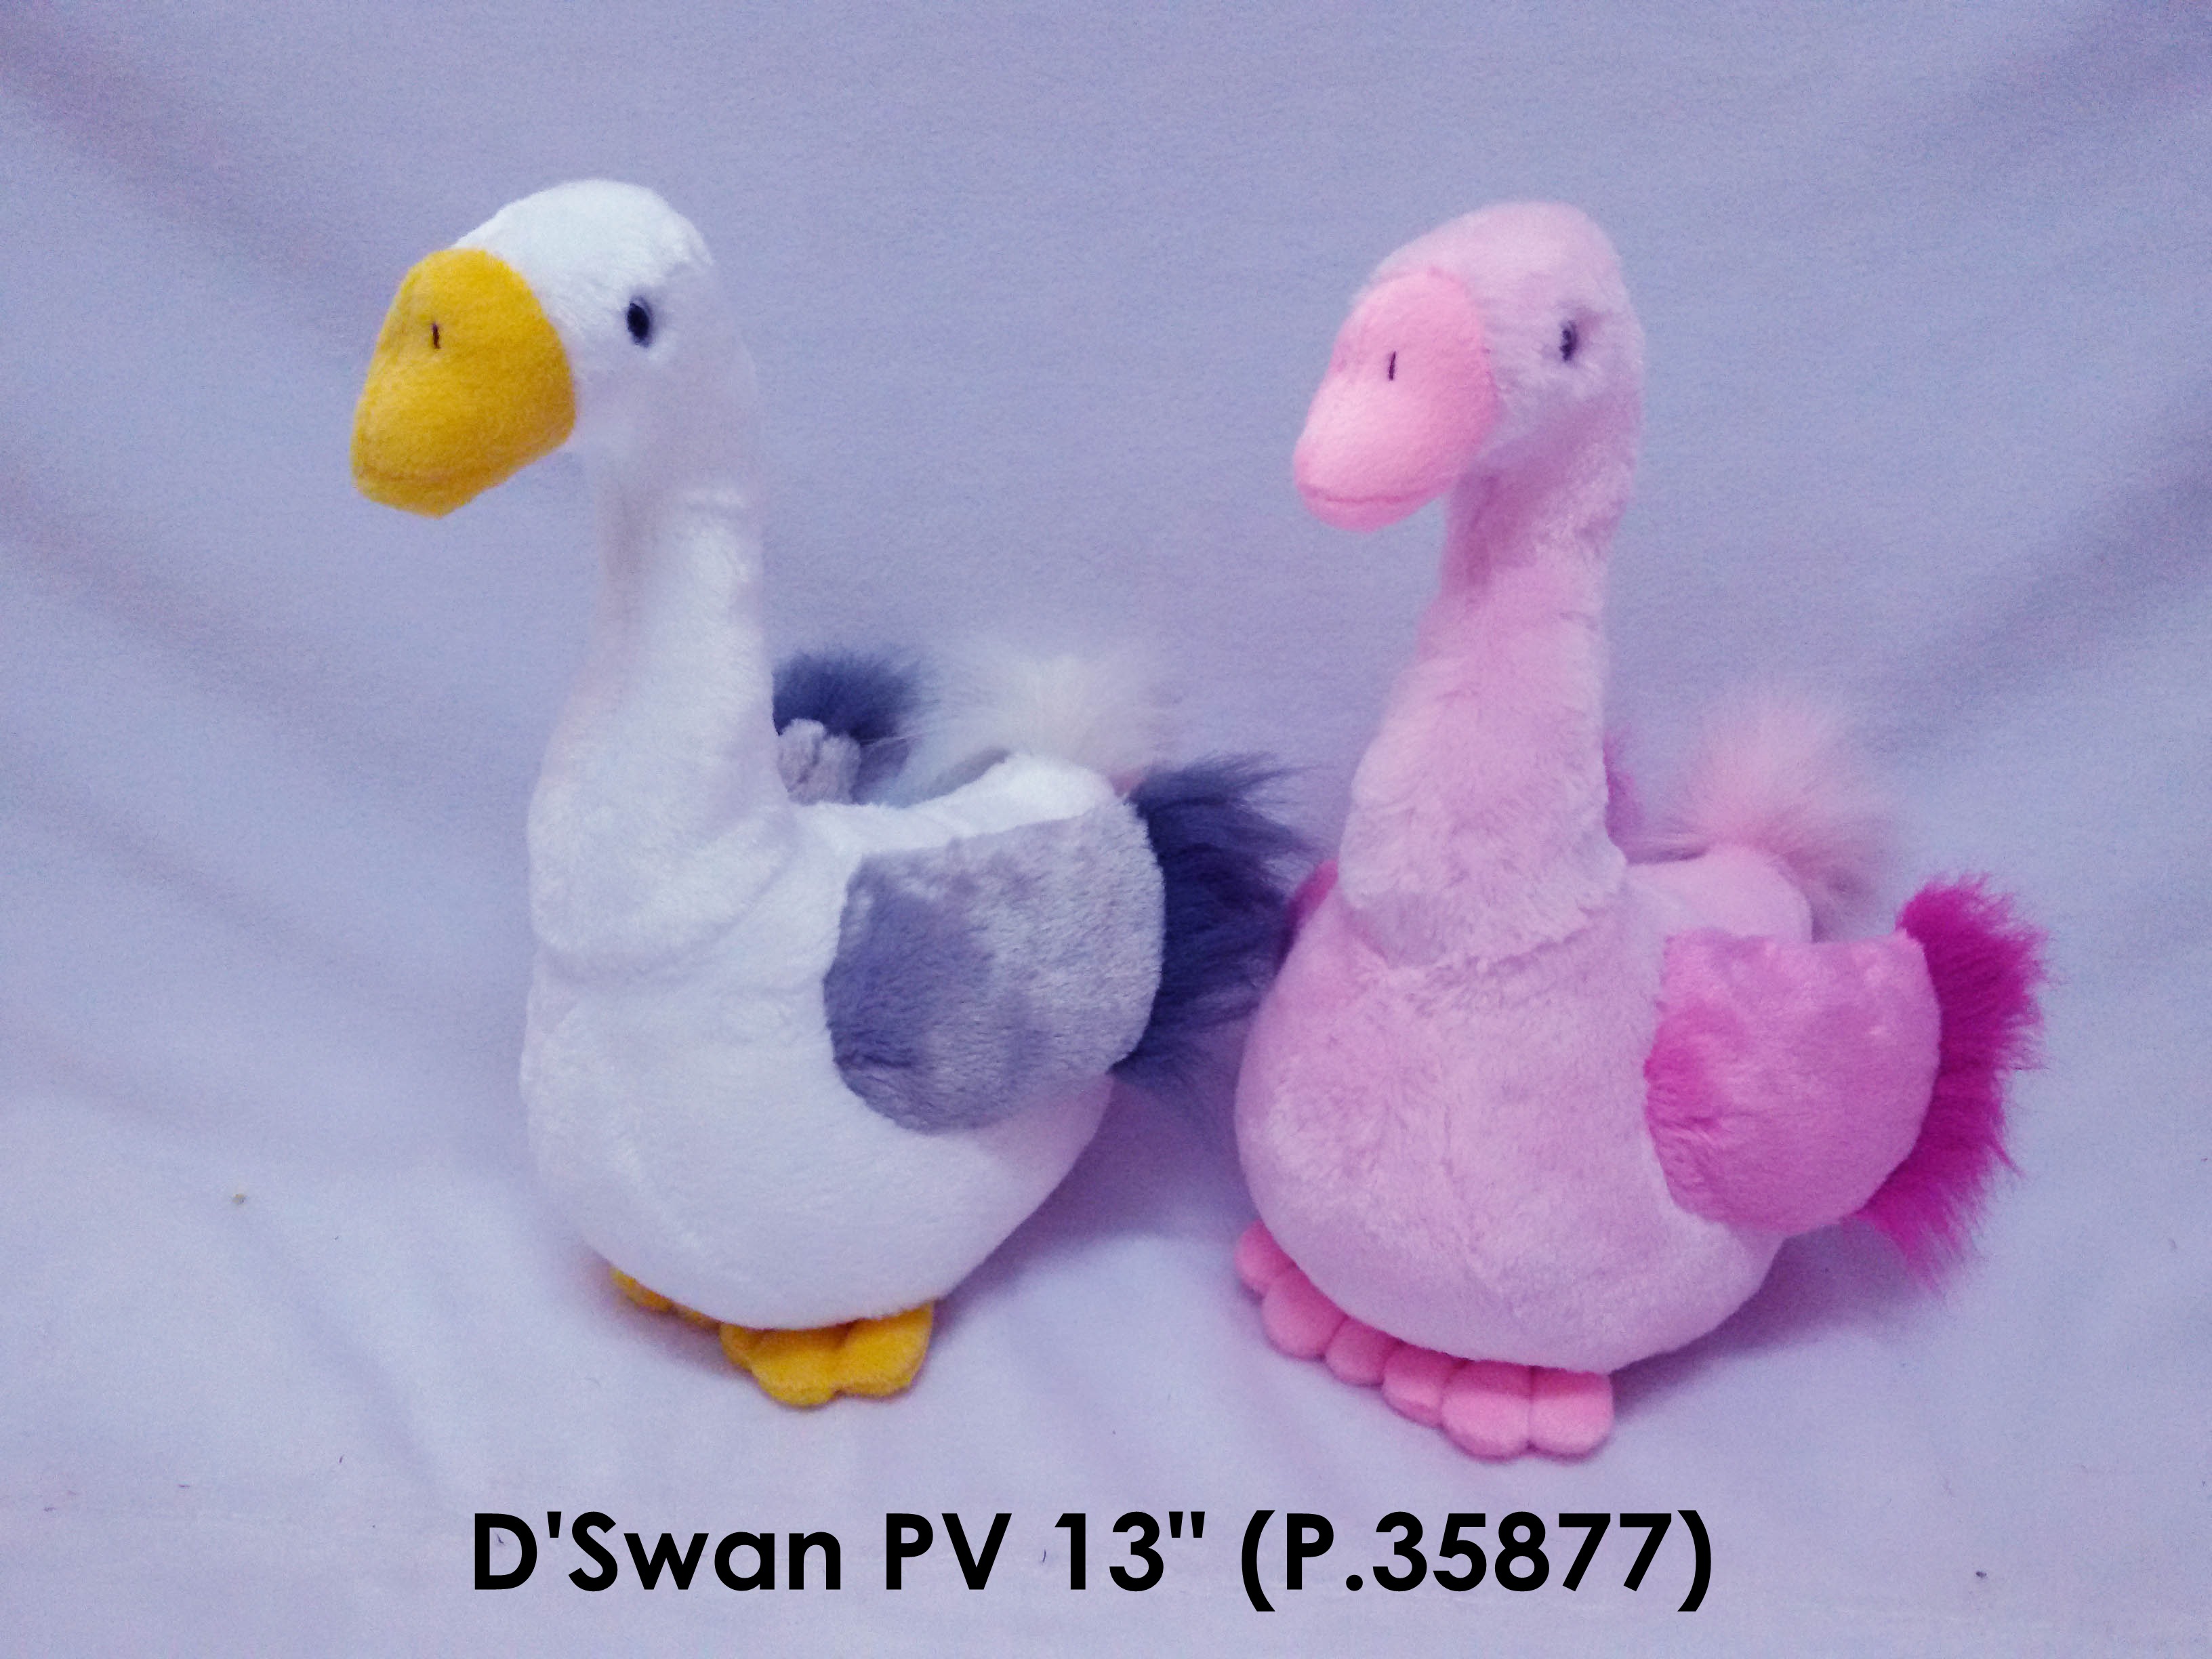 D swan PV 13 in P.35877.jpg